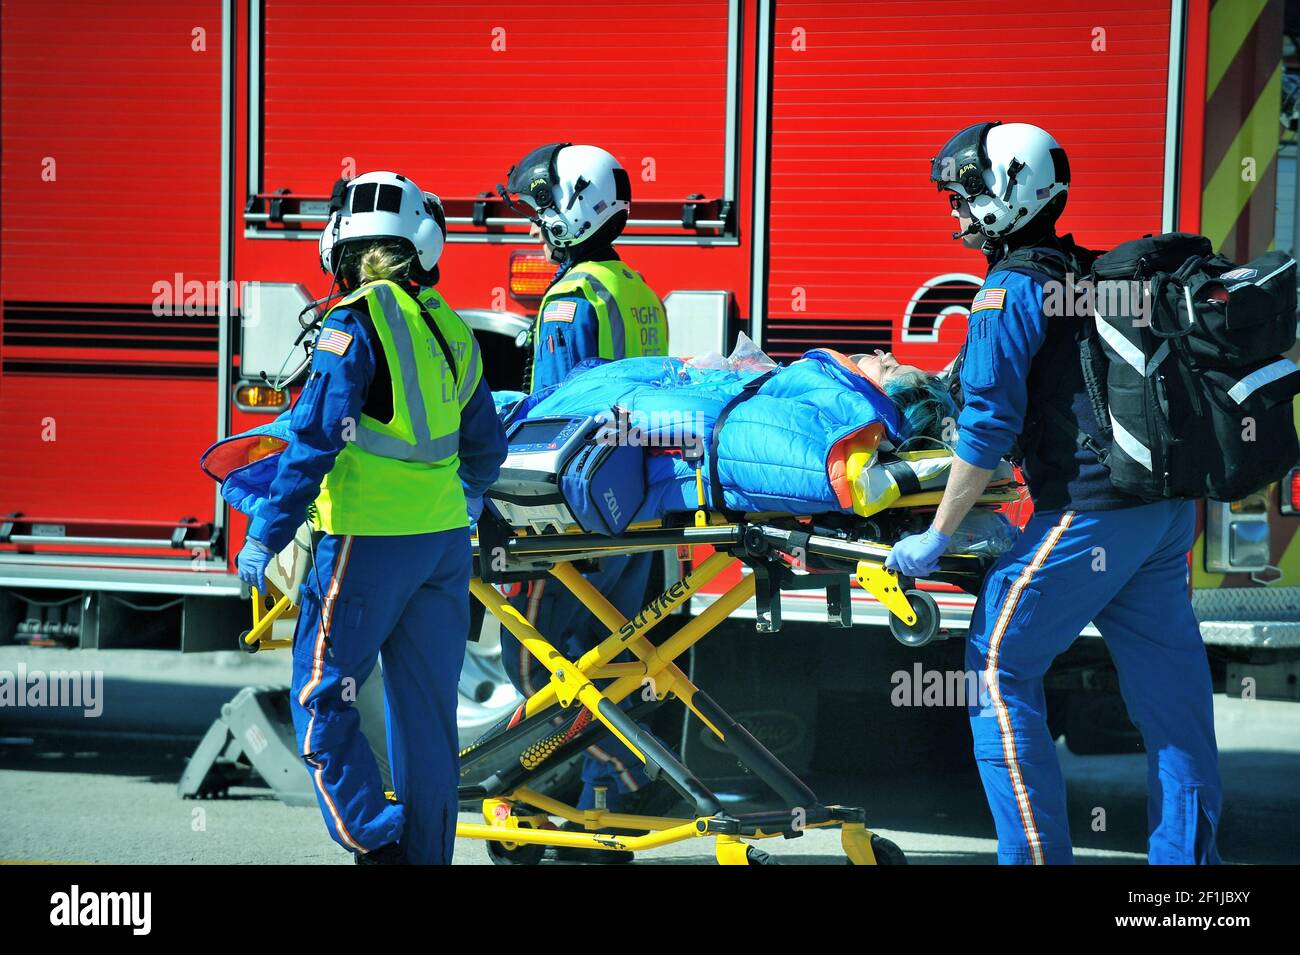 Después de un accidente de coche grave, una víctima fue entregada, vía camilla, a un helicóptero de espera para ser transportada a un hospital suburbano de Chicago. Foto de stock